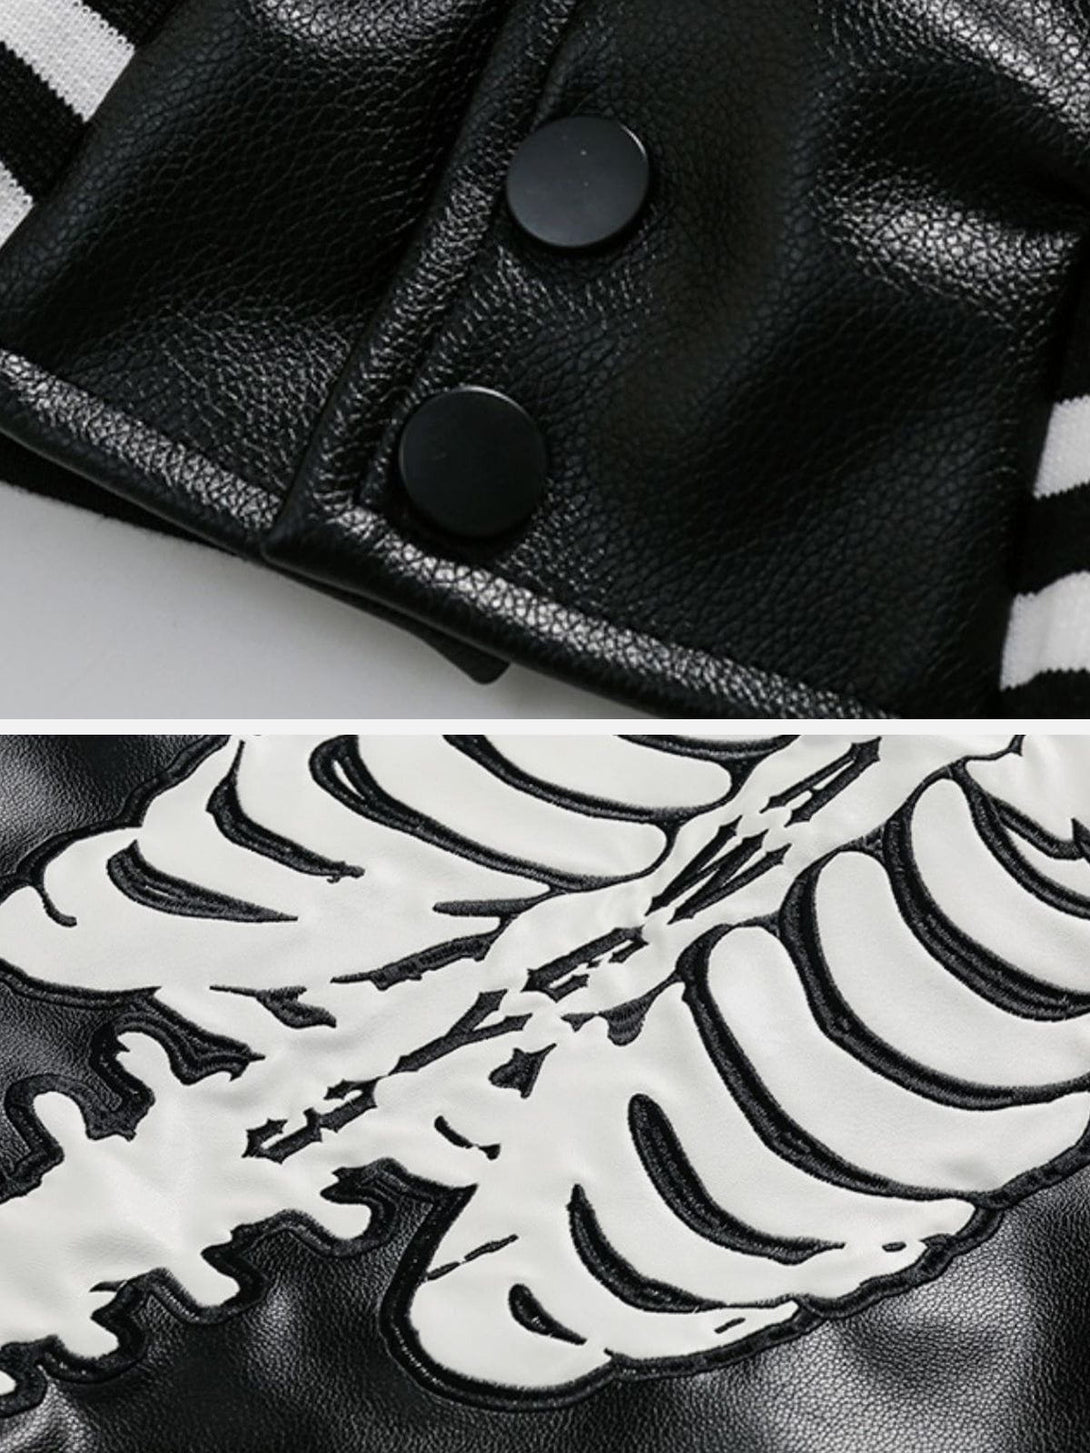 Majesda® - Skeleton Letters PU Jacket outfit ideas, streetwear fashion - majesda.com